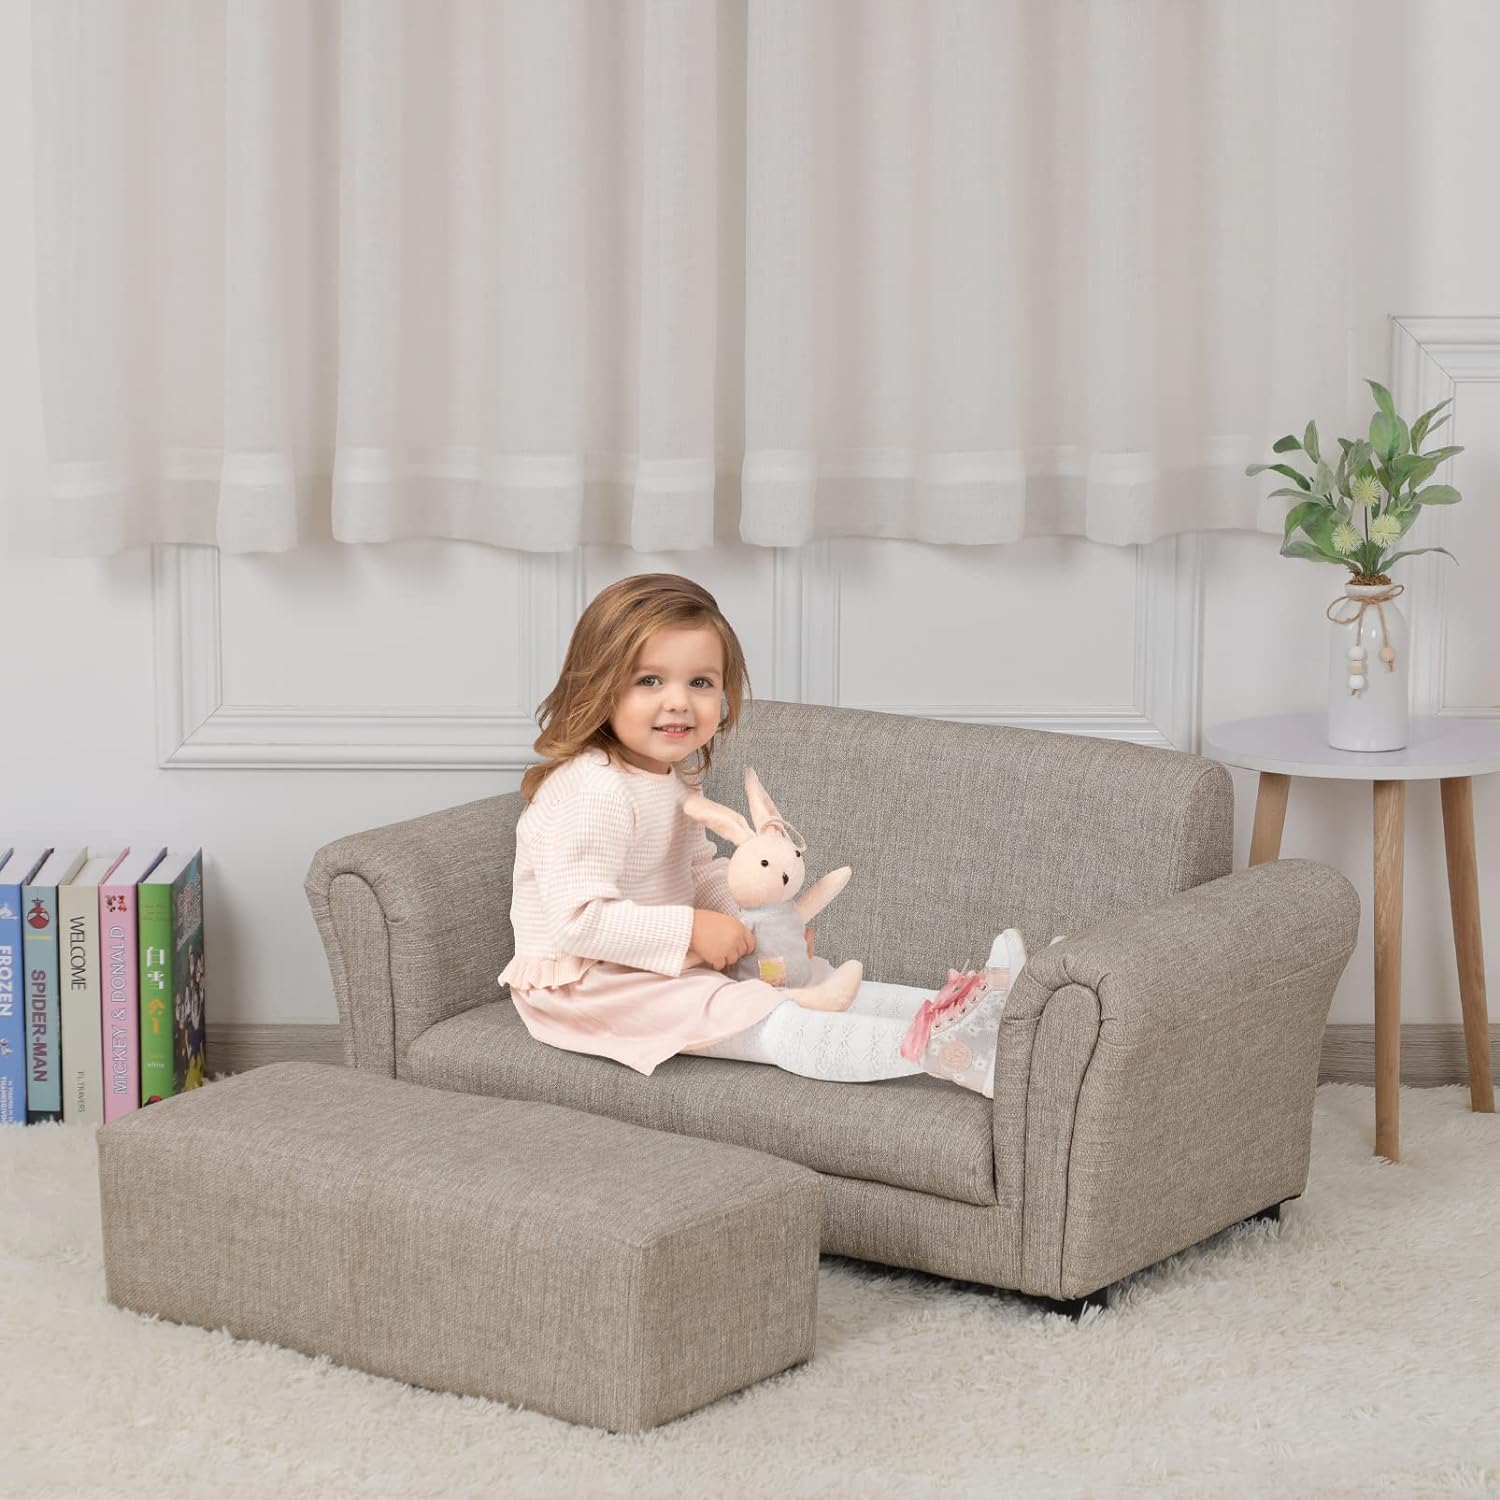 Sofá infantil con reposapiés, sofá biplaza tapizado para niños con otomana,  marco de madera resistente certificado ASTM y CPSIA, juego de 2 asientos